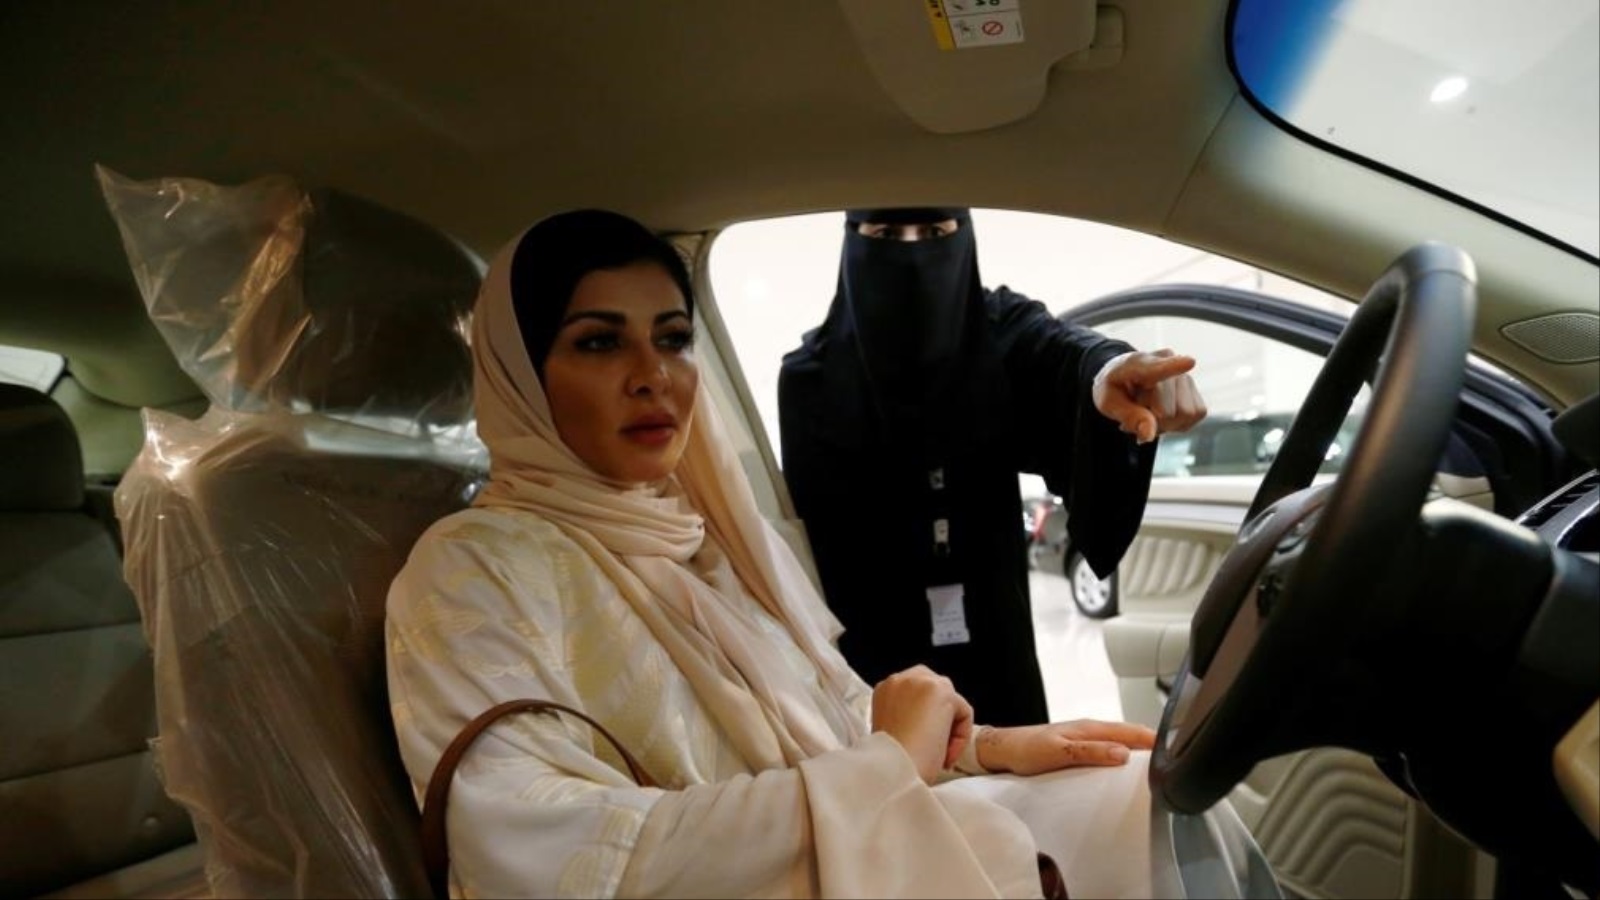 ‪قيادة المرأة السعودية للسيارة‬ (مواقع التواصل)